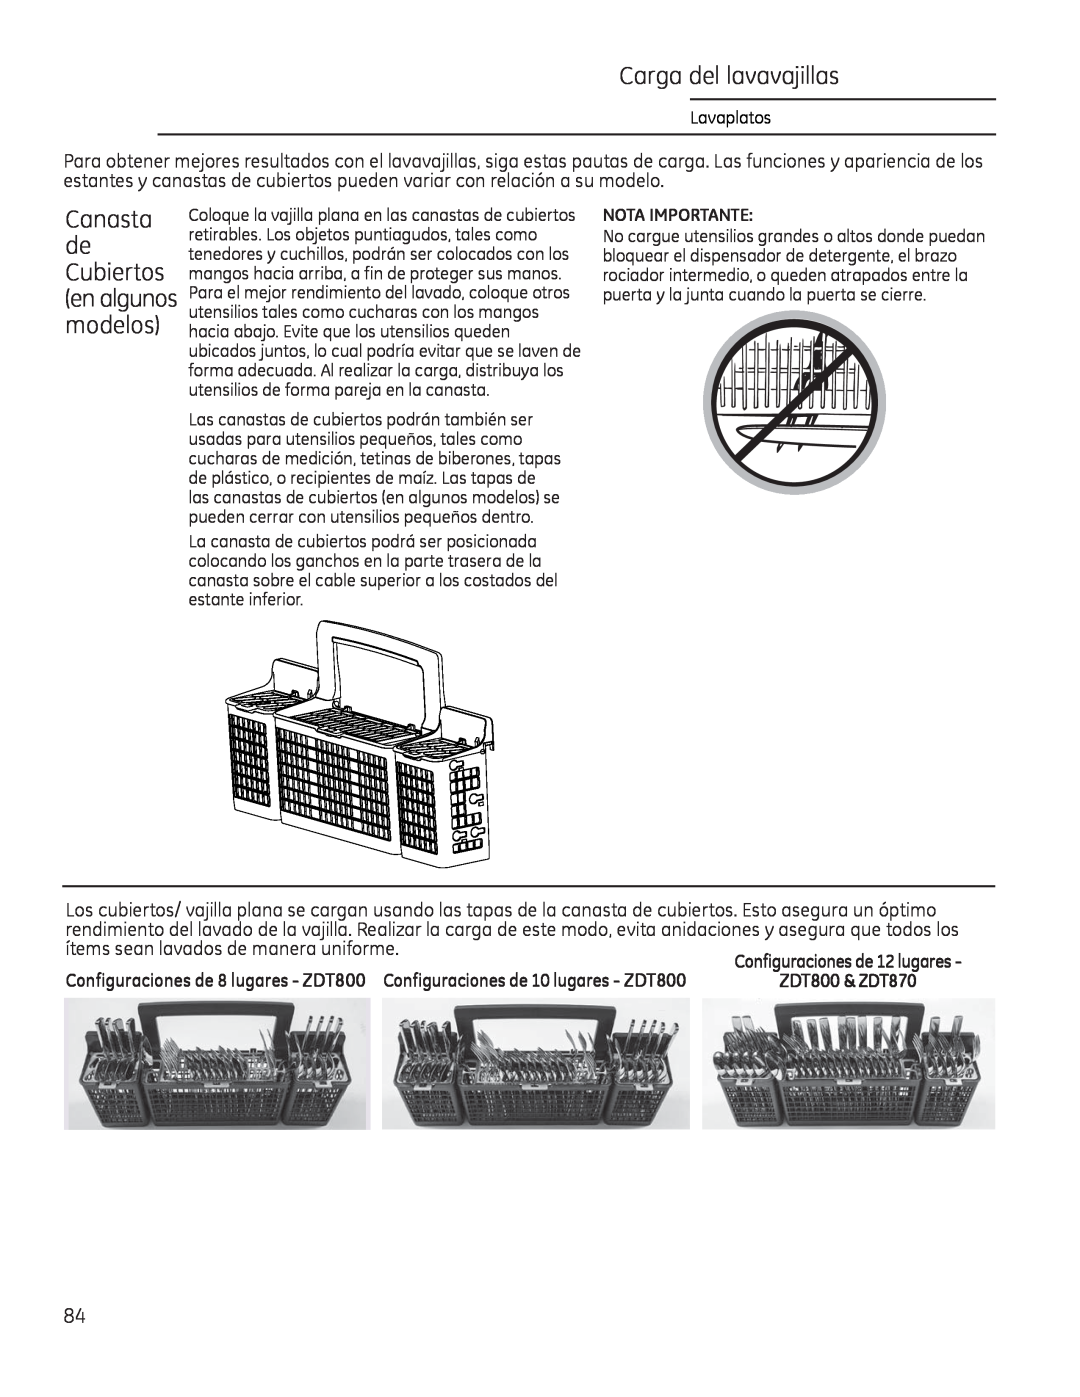 GE Monogram 49-55086 owner manual Canasta de Cubiertos en algunos modelos, Nota Importante 